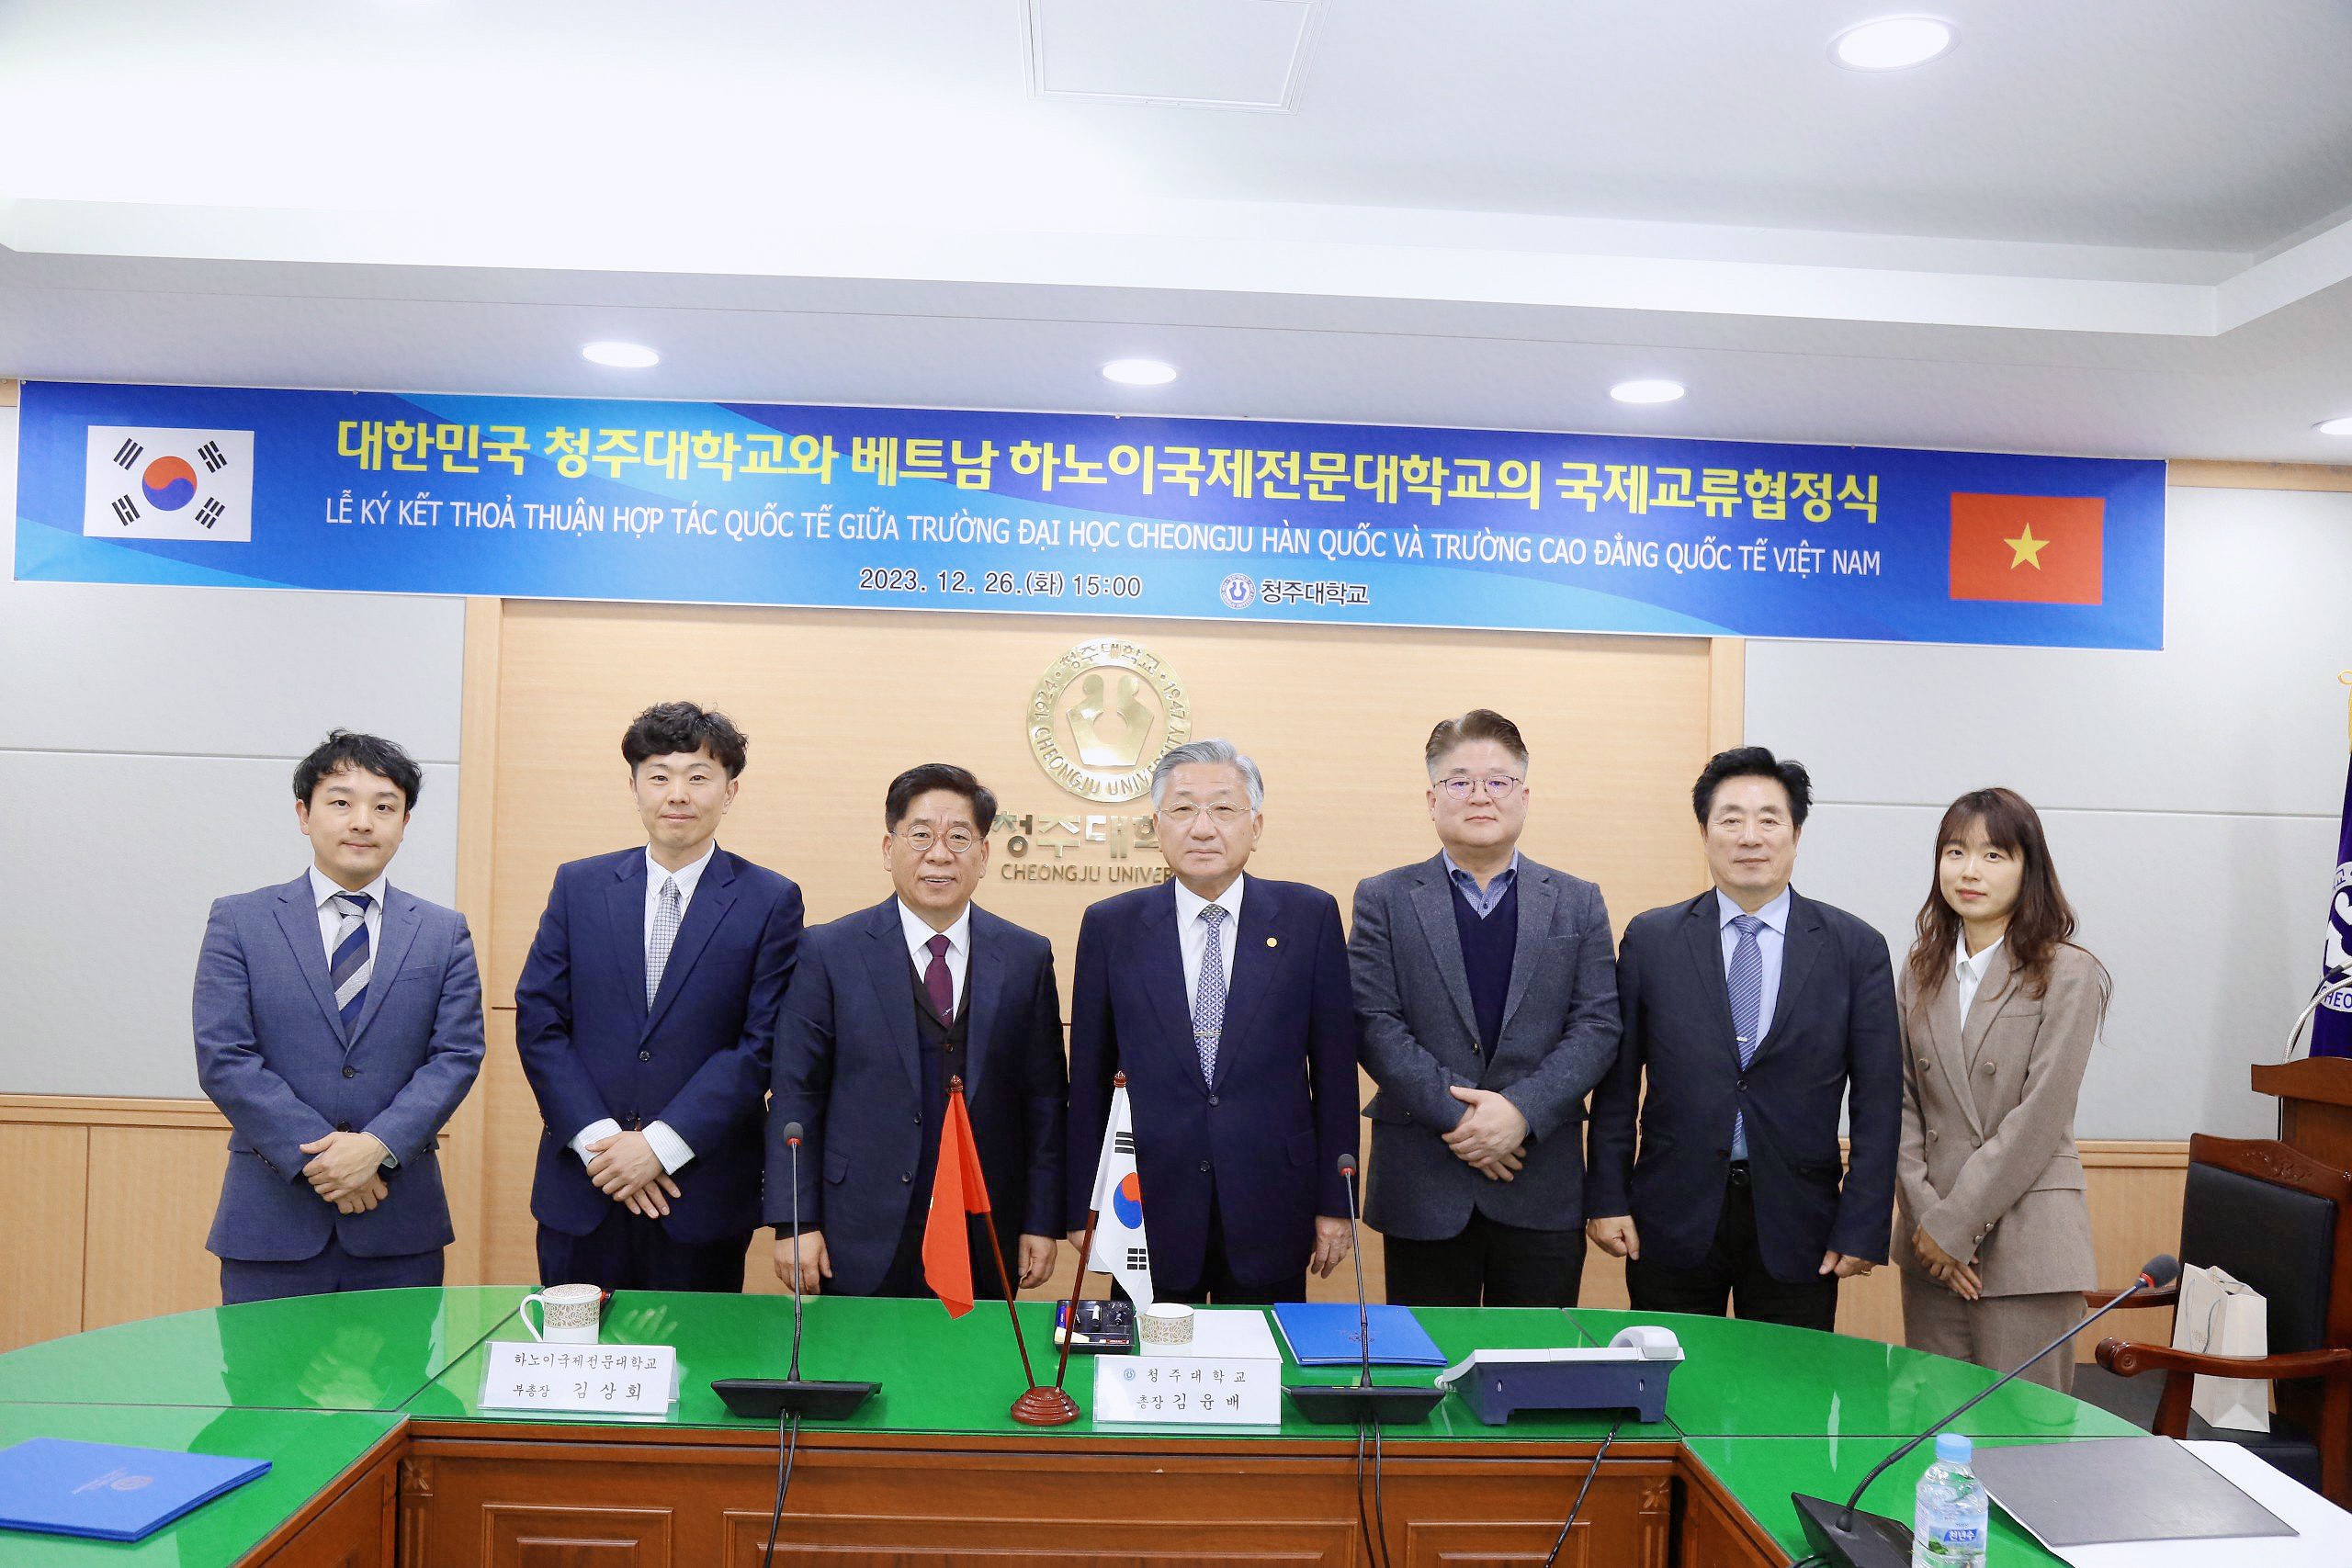 Lễ ký kết hợp tác quốc tế giữa Trường Đại học Cheongju và Trường Cao đẳng Quốc tế Hà Nội